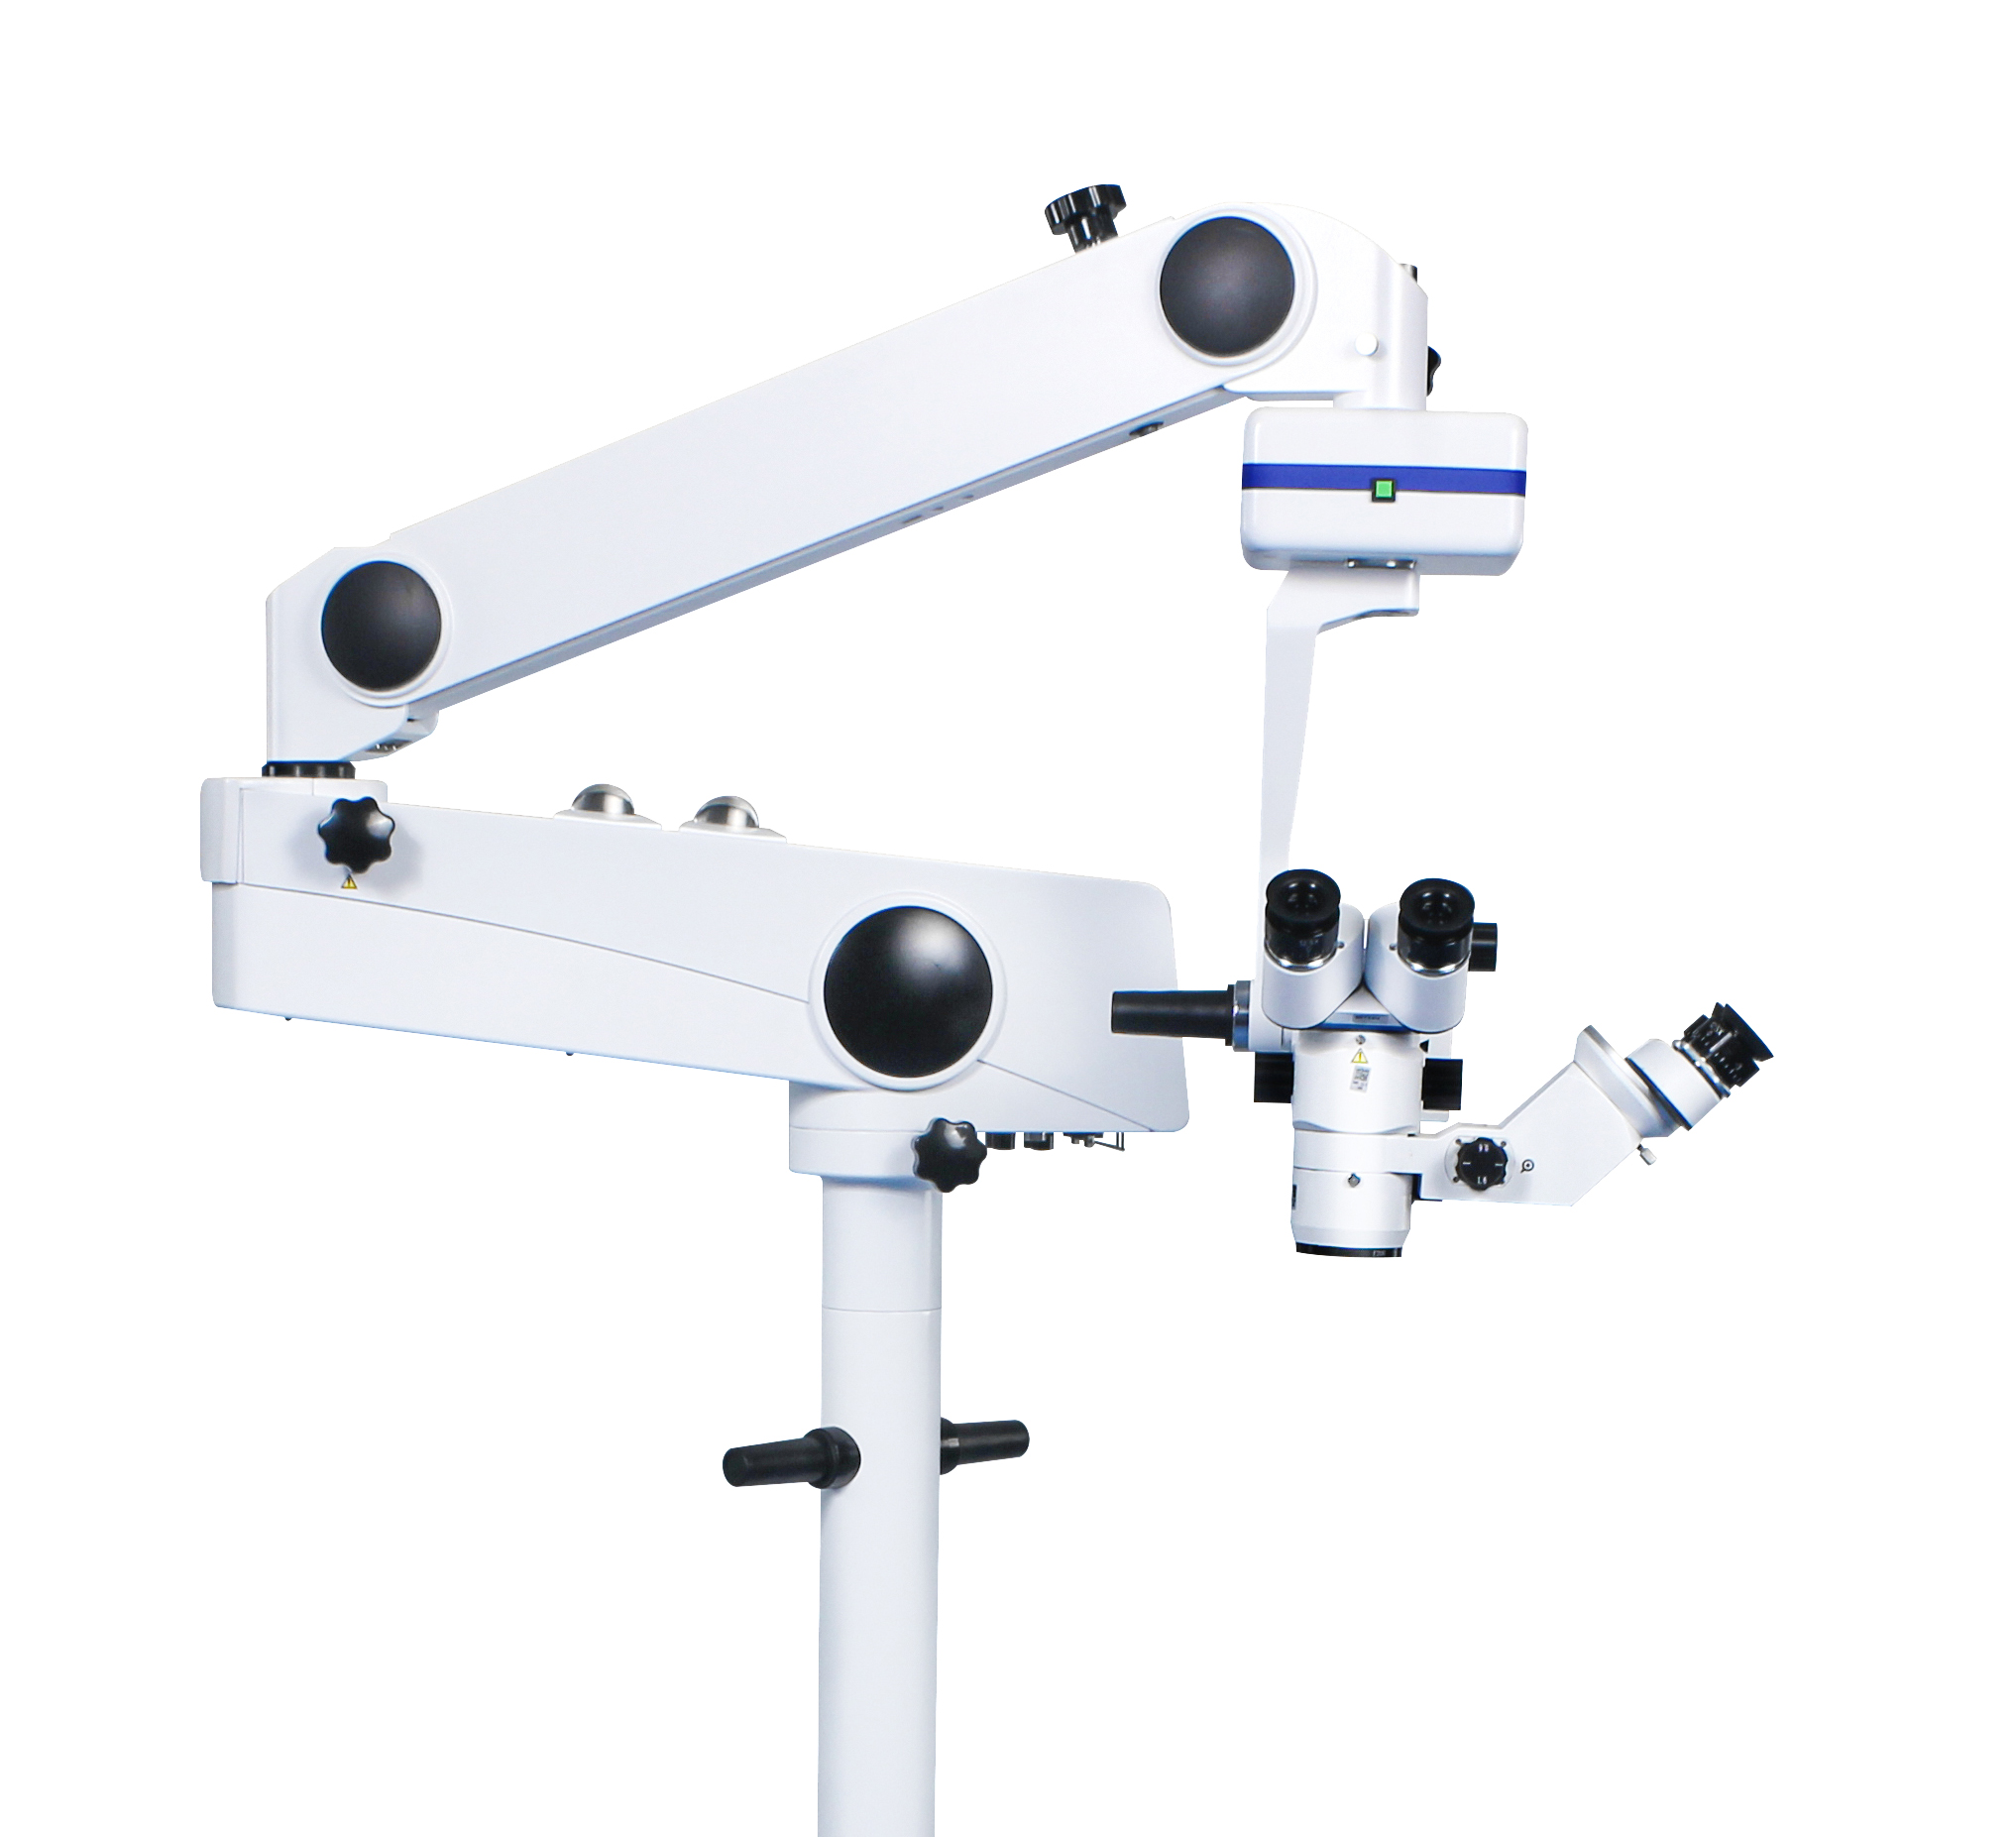 Pokroky v chirurgických mikroskopoch: Zvýšenie presnosti a zrakovej čistoty v lekárskych postupoch